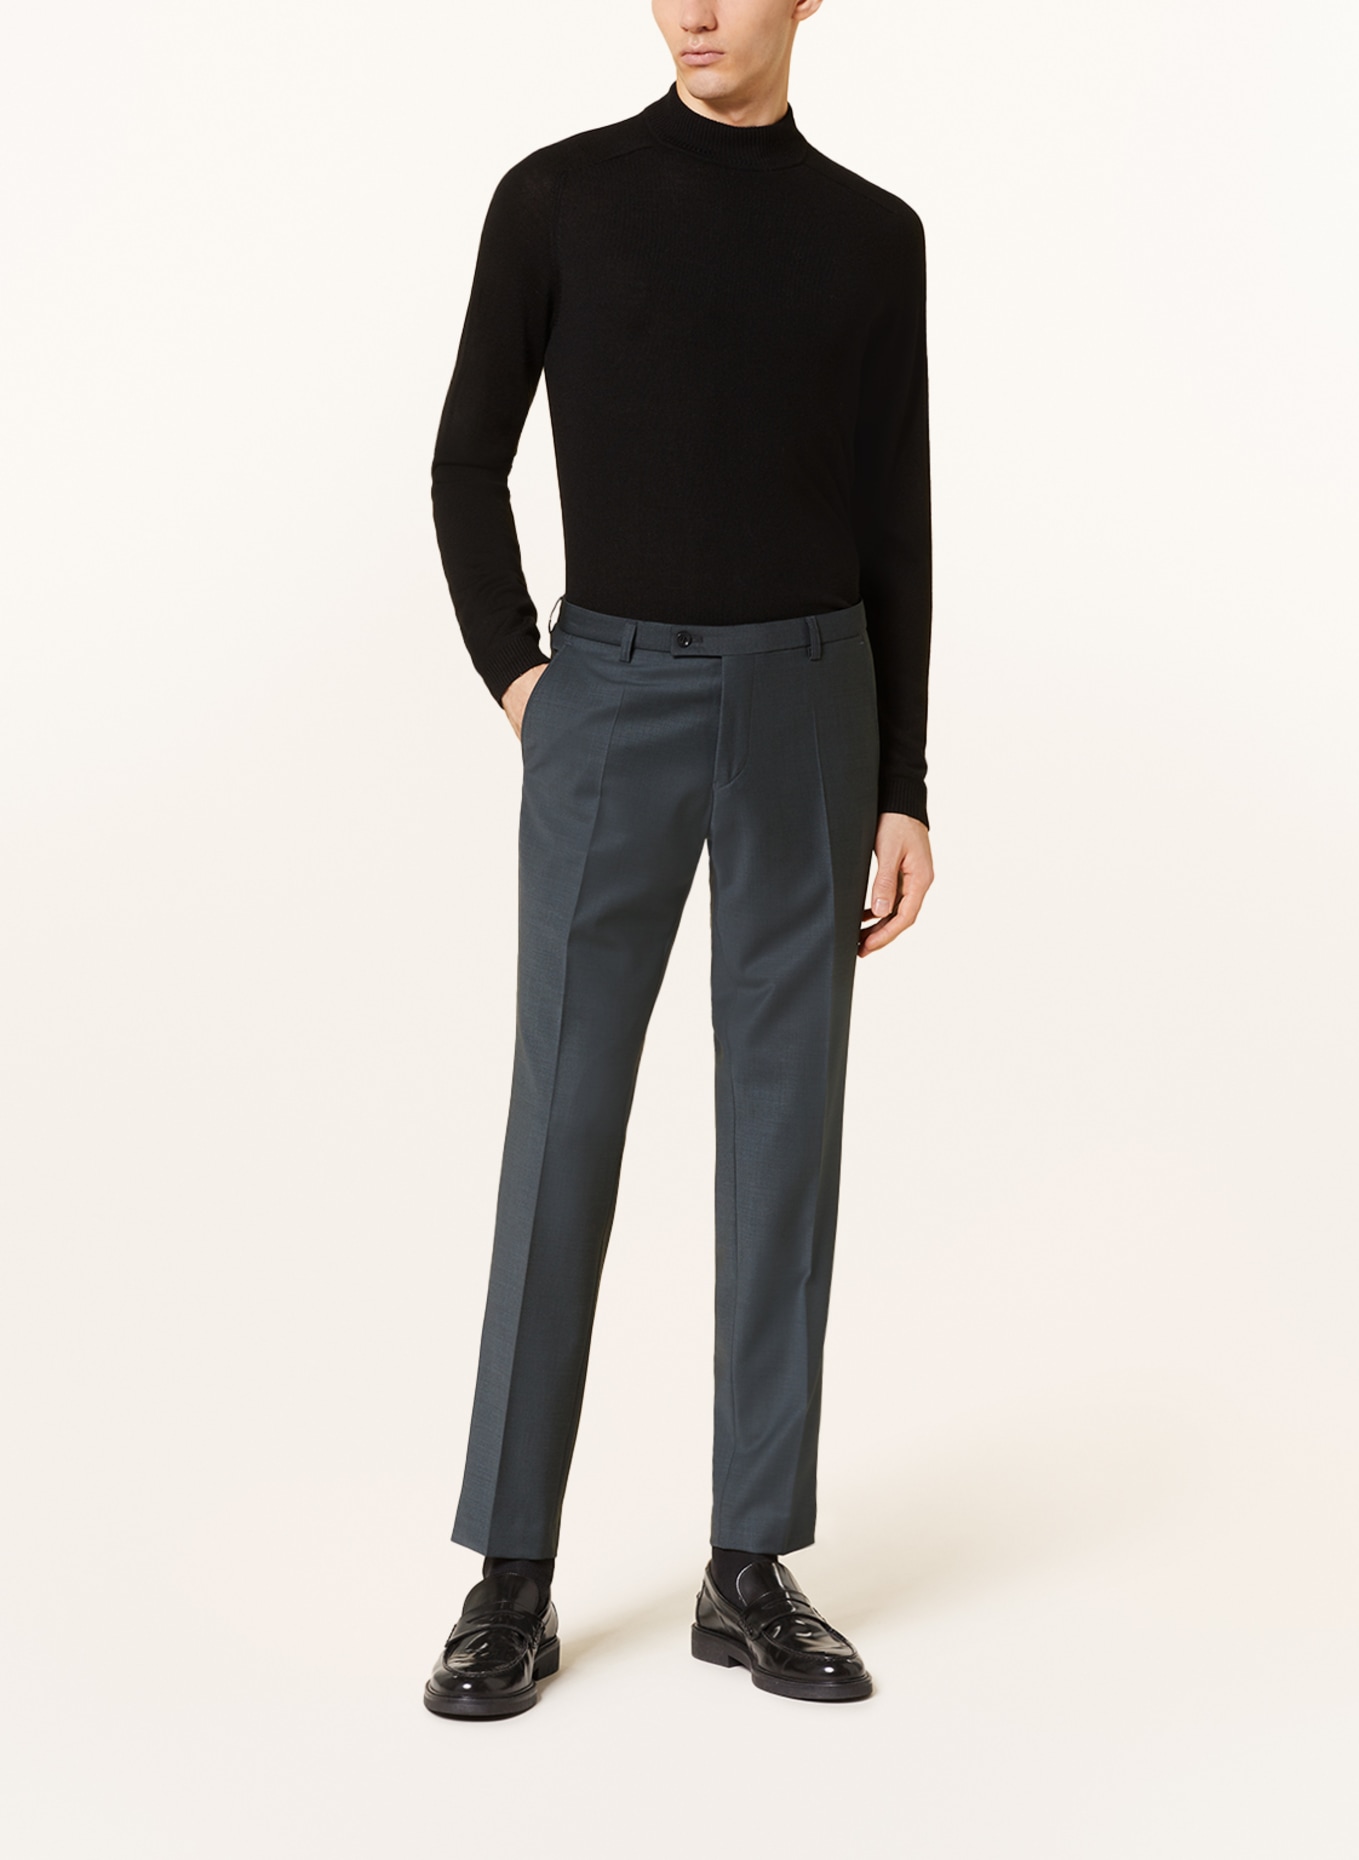 CG - CLUB of GENTS Suit trousers COLE slim fit, Color: 53 gruen dunkel (Image 3)